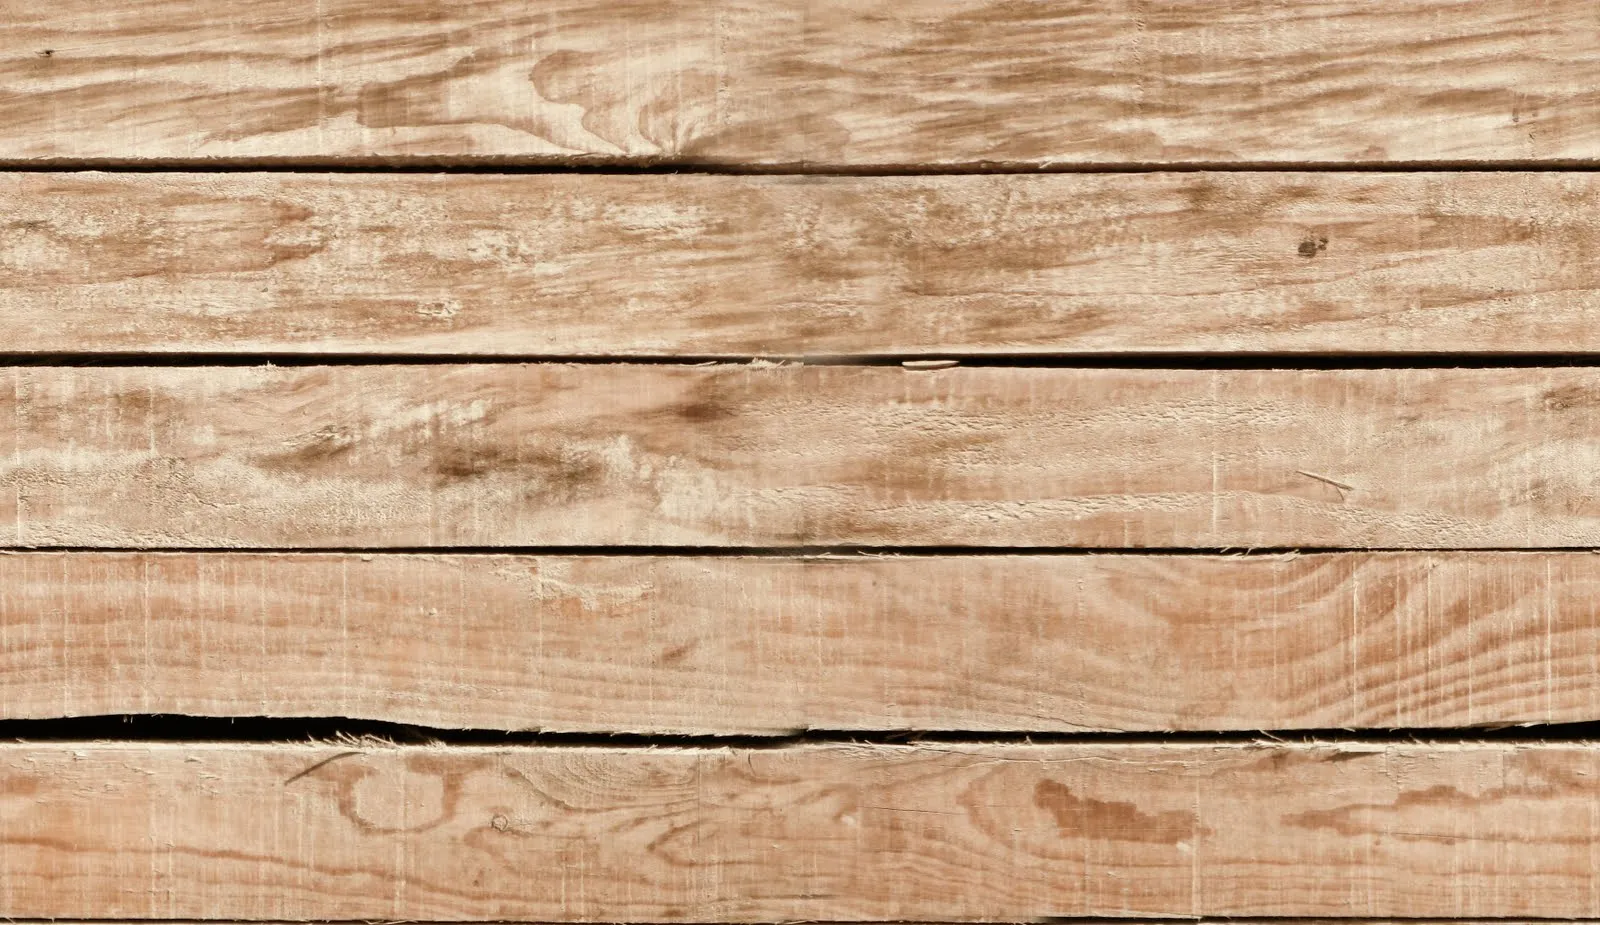 Creative Mindly: Fondos de madera para tus diseños o lo que sea